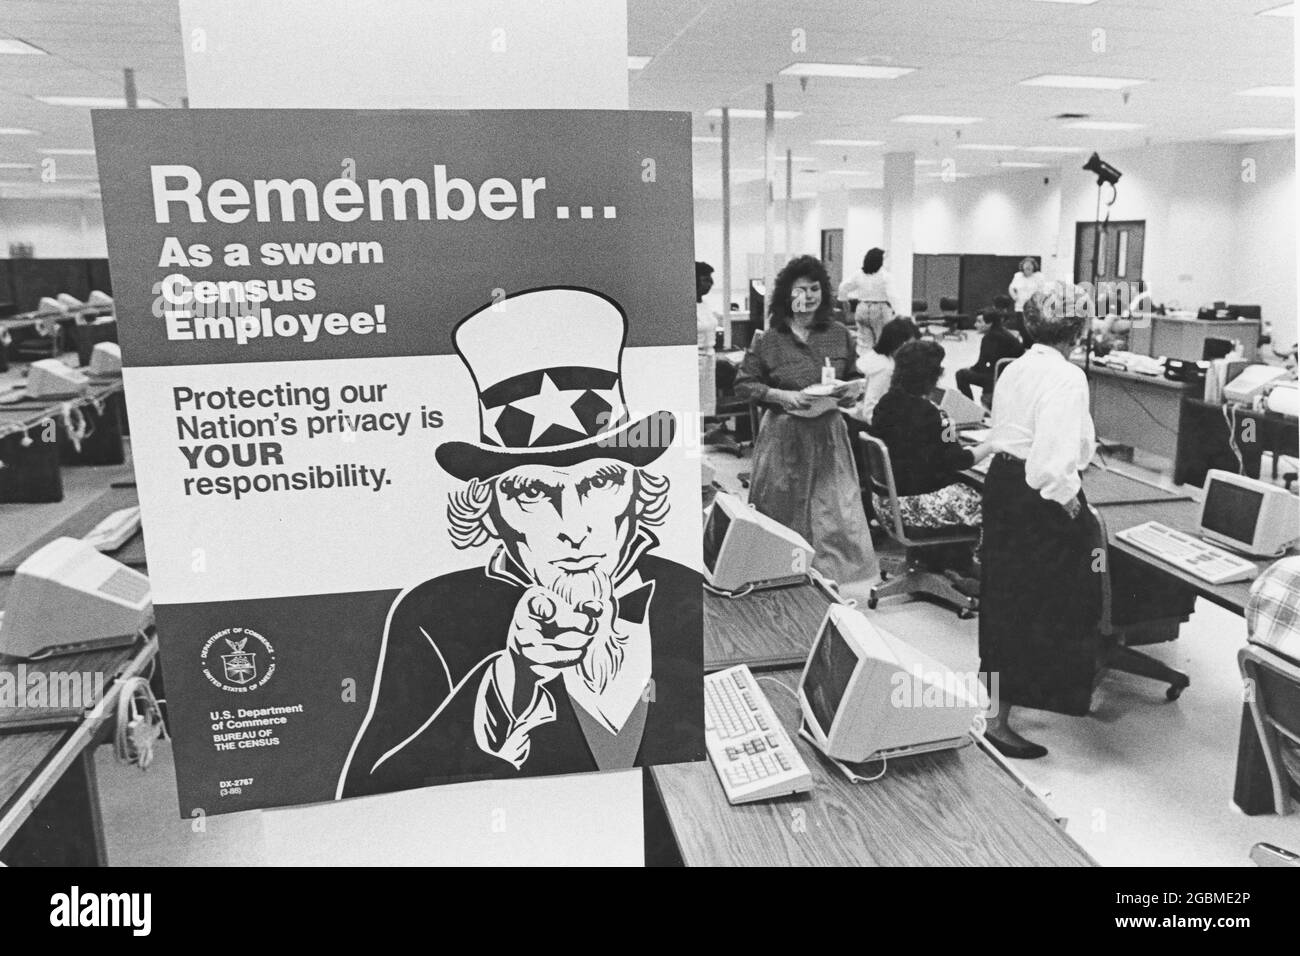 Austin, Teas USA, 1990: Le signe oncle Sam rappelle aux employés du centre de traitement des données régional du recensement des États-Unis de maintenir la confidentialité des renseignements fournis par les répondants du recensement. ©Bob Daemmrich Banque D'Images